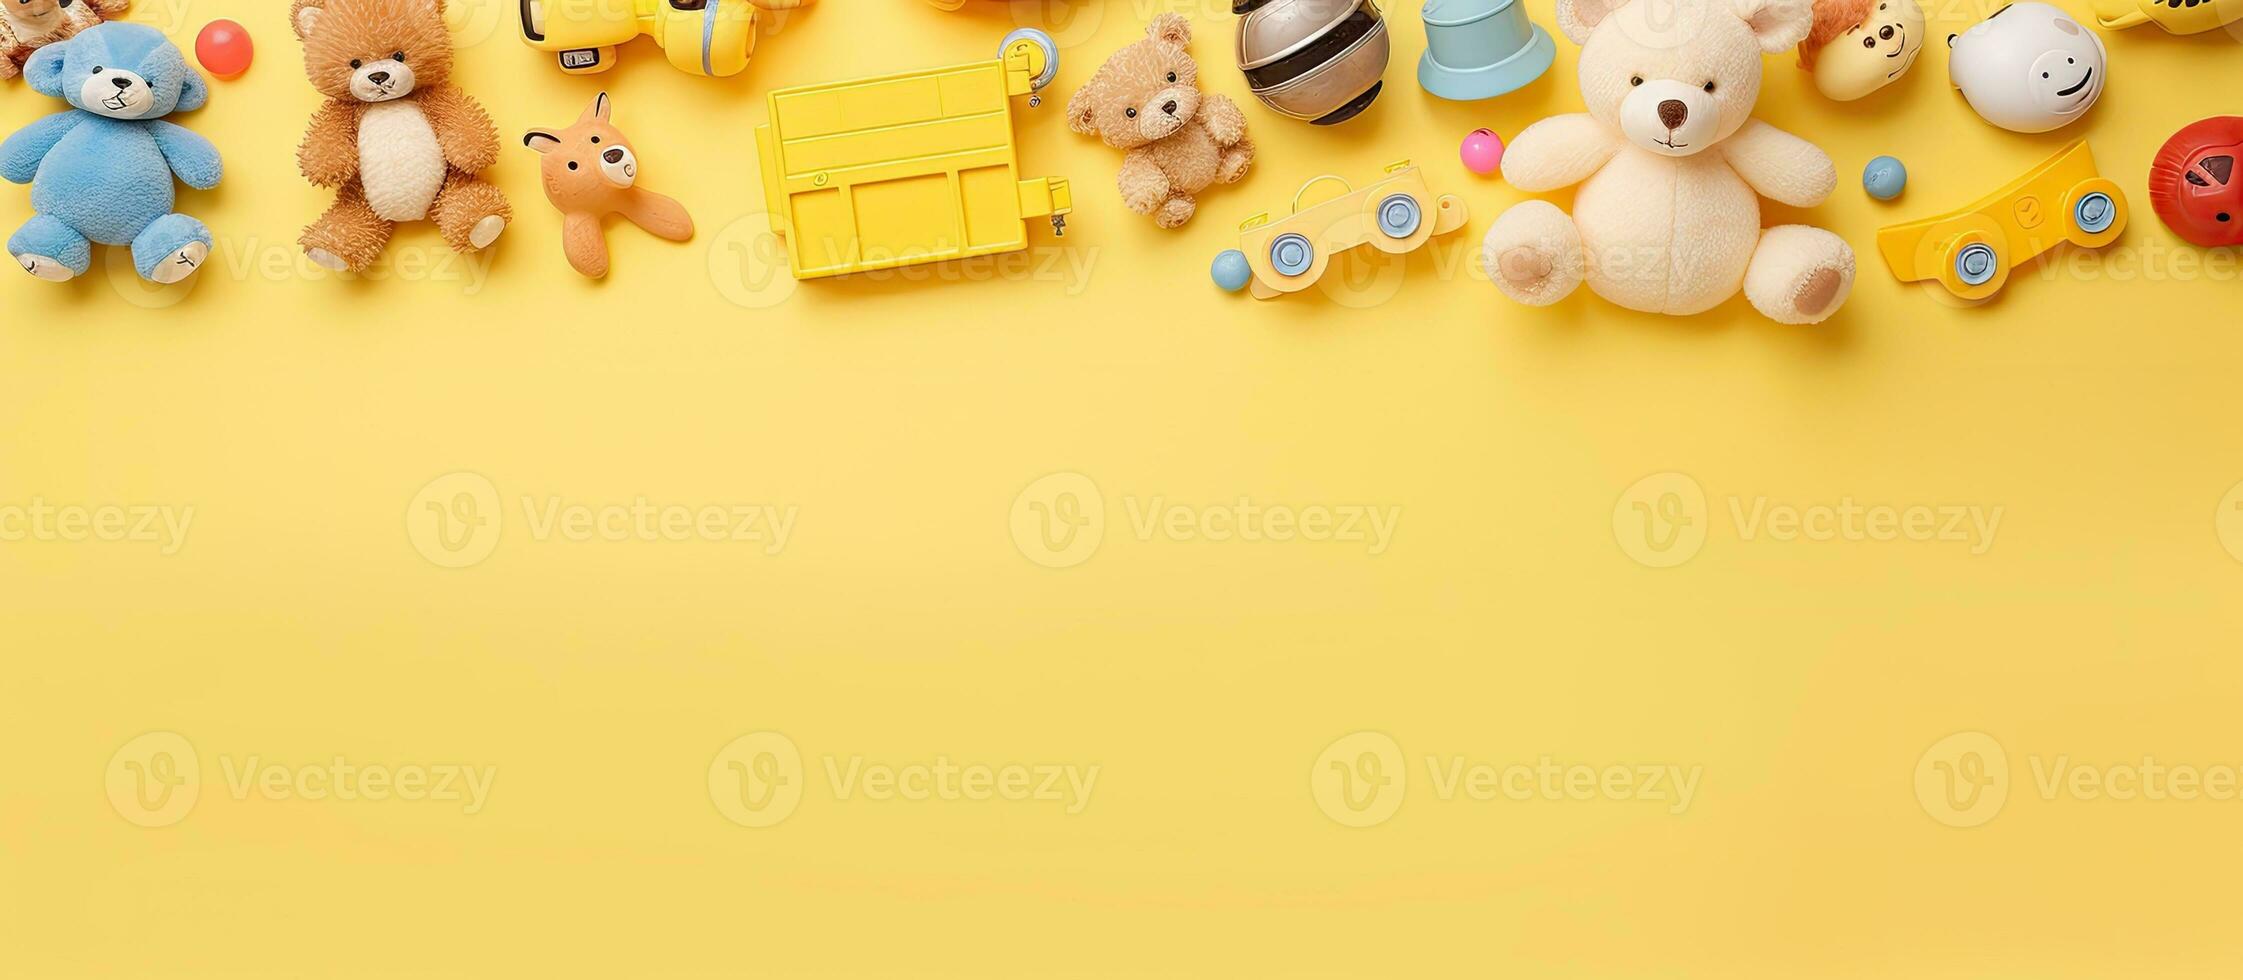 samling av bebis och barn leksaker placerad på en pastell gul bakgrund. de fotografera är tagen foto